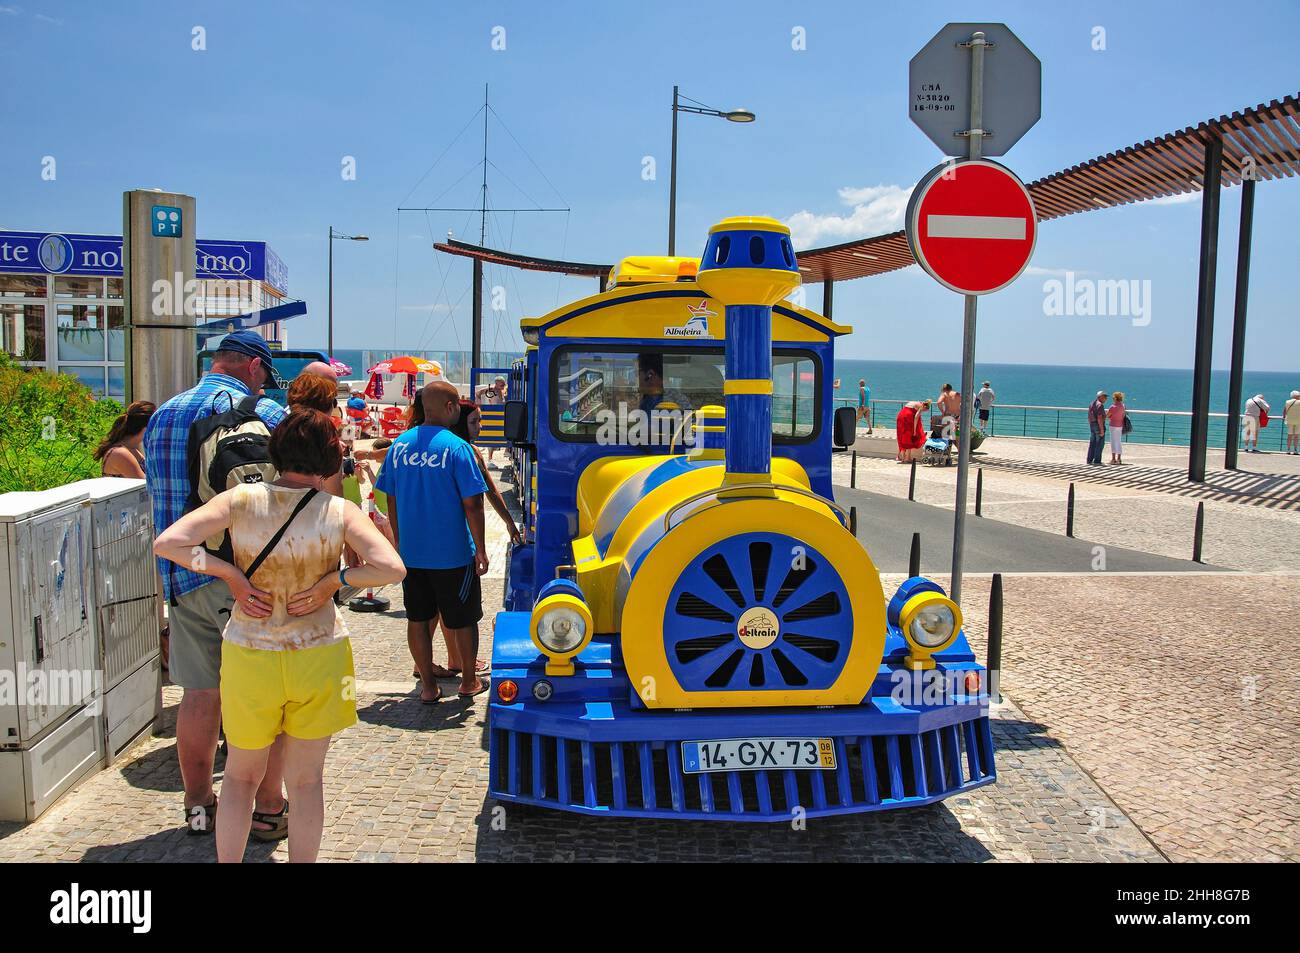 Promenade electric train, Albufeira, Algarve Region, Portugal Stock Photo